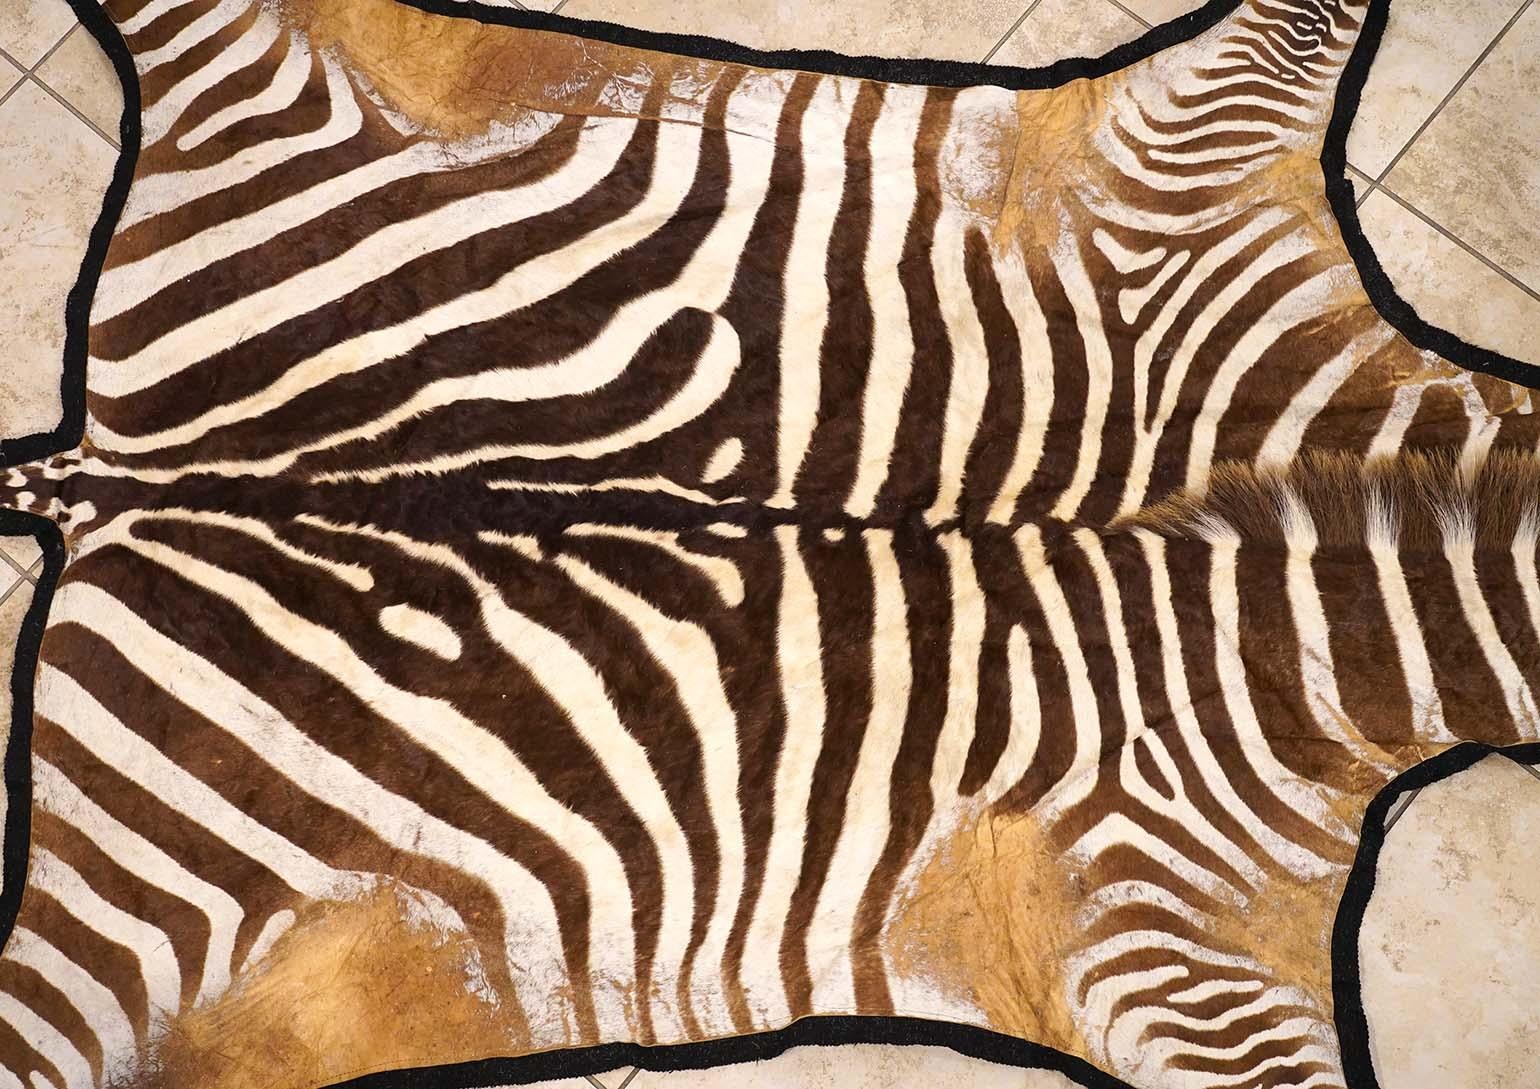 African Large Zebra Hide Rug with Black Felt Backing